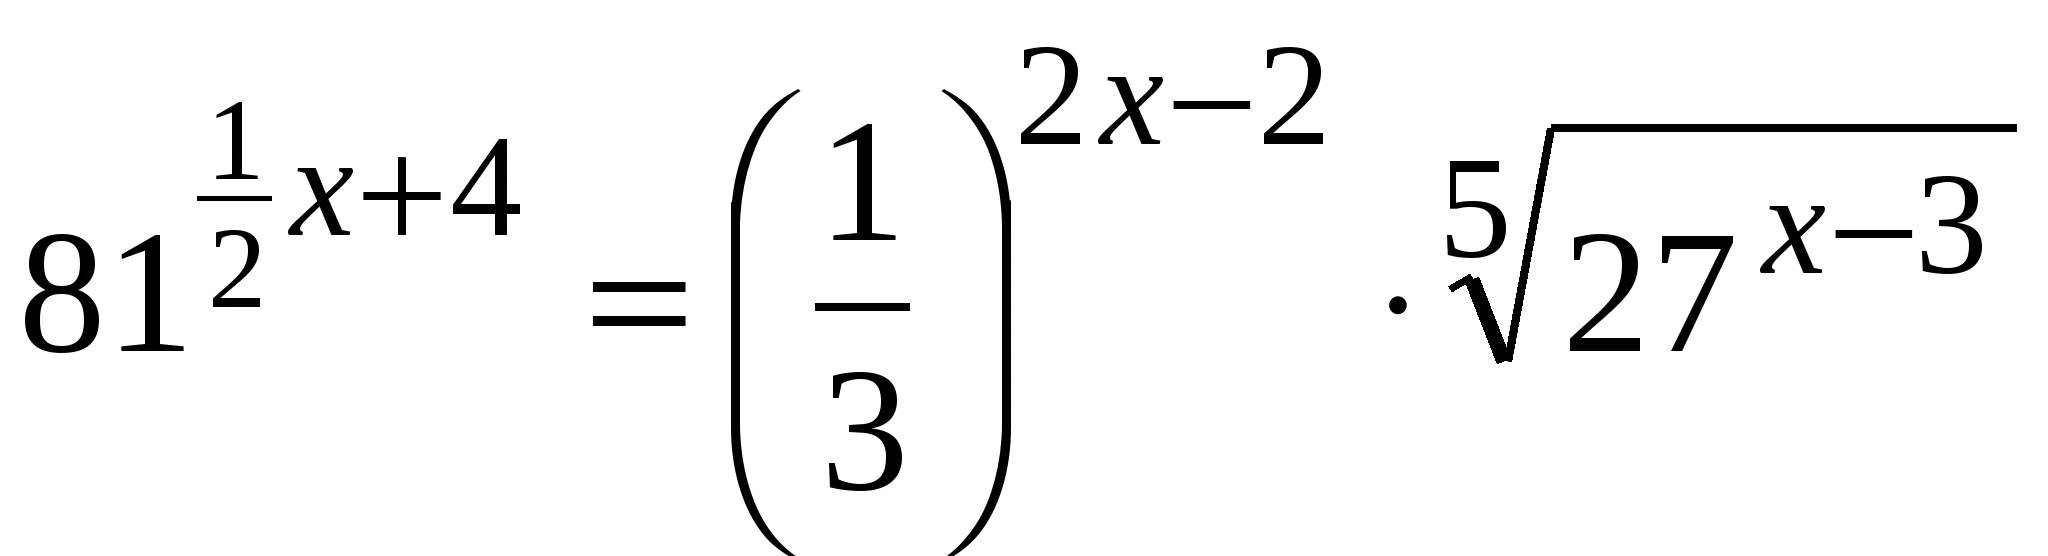 Методическое указание по выполнению практических работ по математике (1-2 курс)